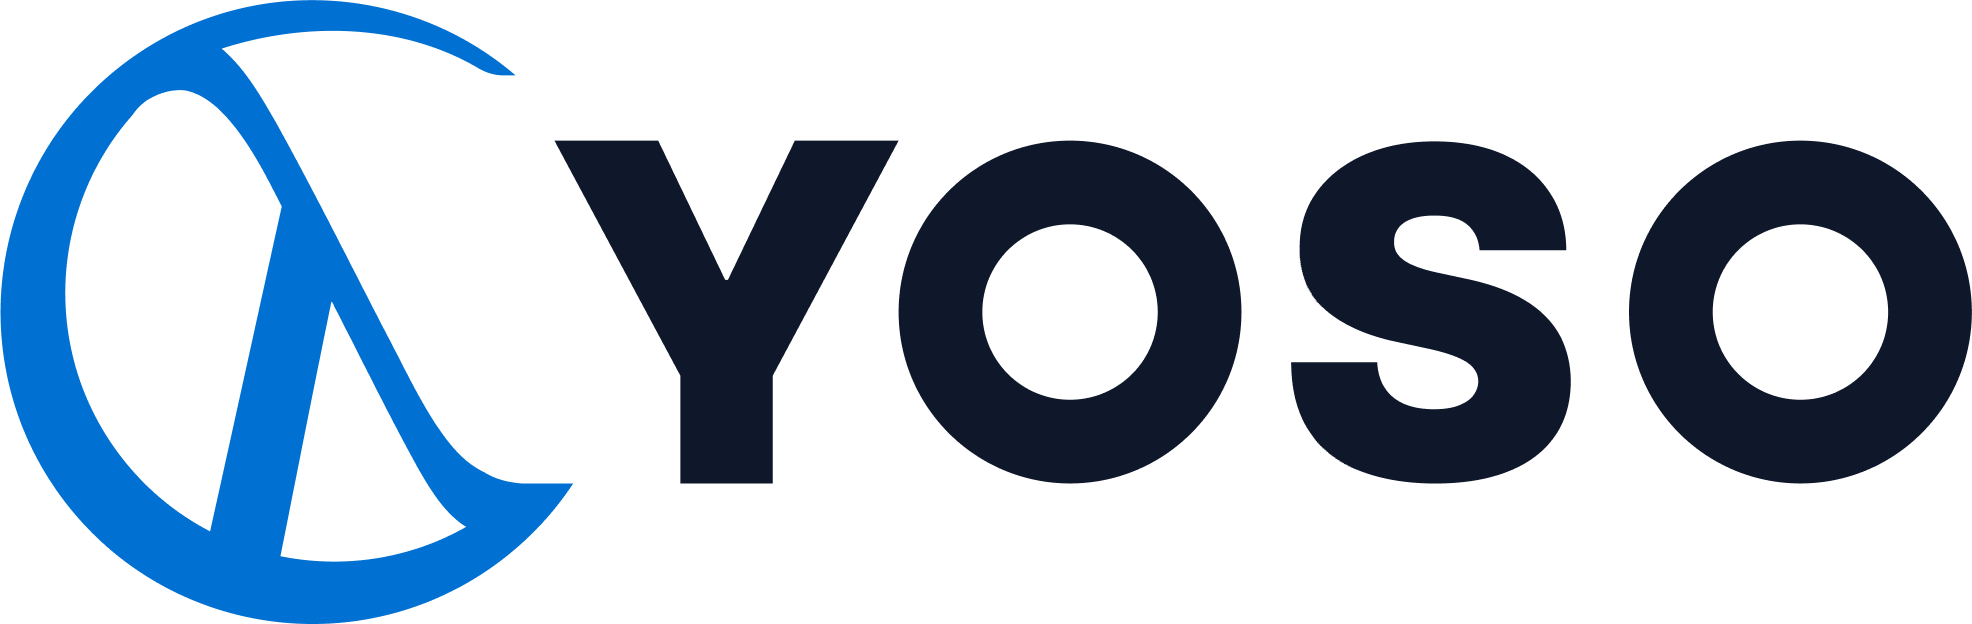 Yoso logo